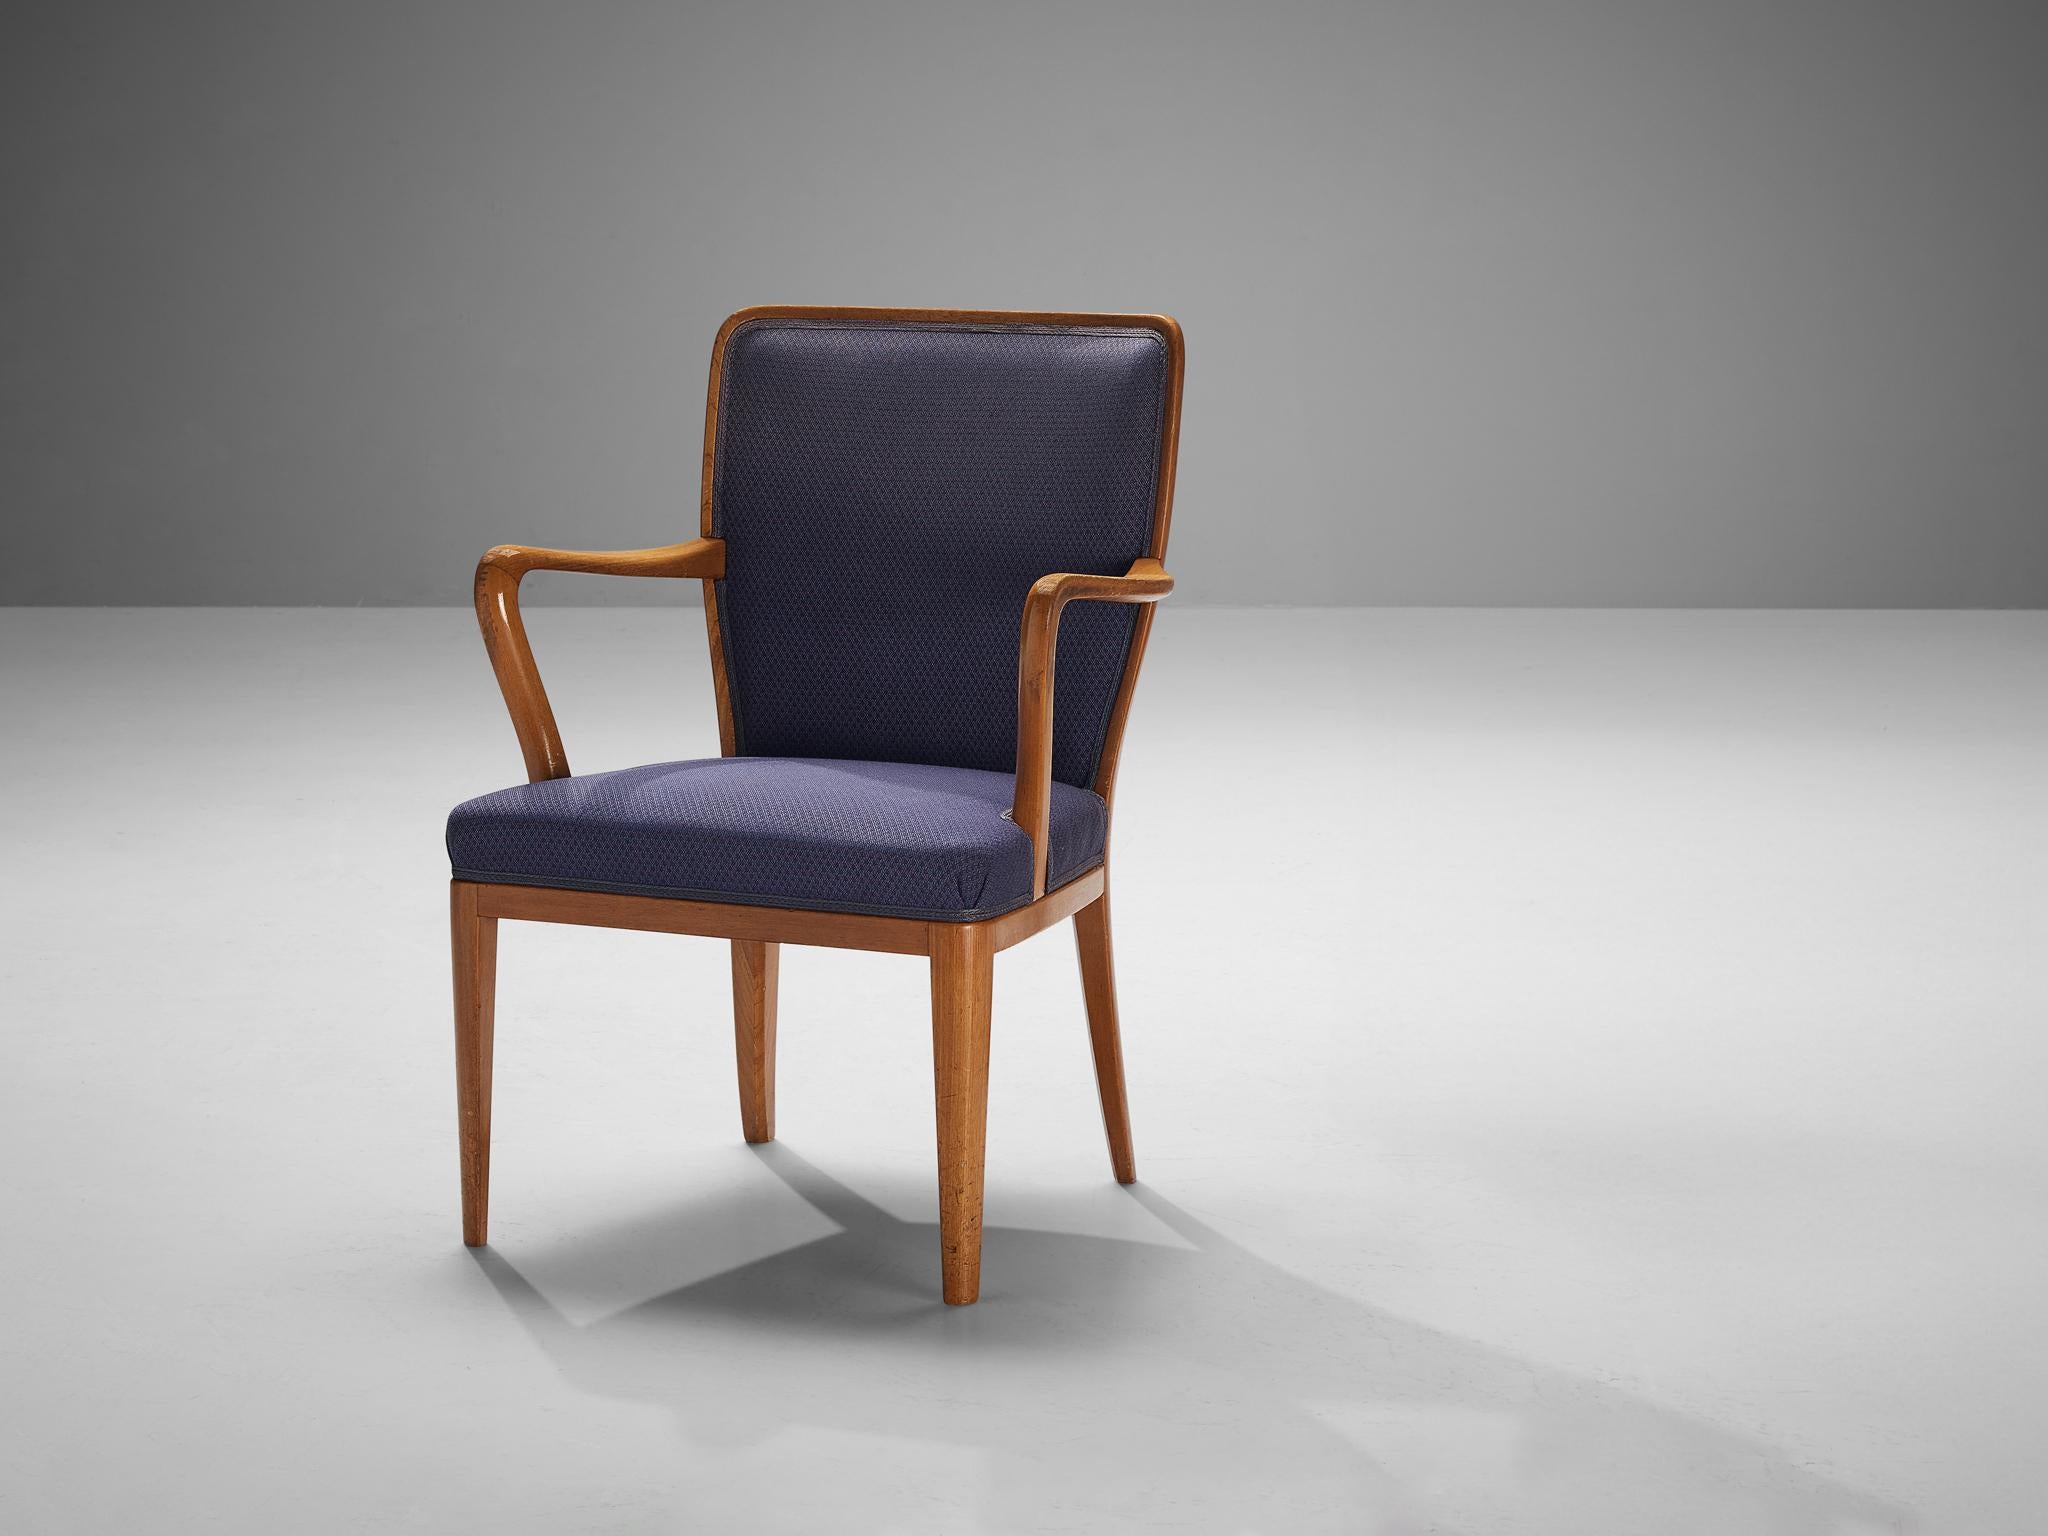 Carl Malmsten zugeschrieben, Sessel, Teakholz, Stoff, Schweden, 1950er Jahre.

Esstischstuhl mit violettem Bezug, Carl Malmsten (1888-1972) zugeschrieben. Die einzigartigen Linien und Kurven des Designs sind auffallend und die sich verjüngenden